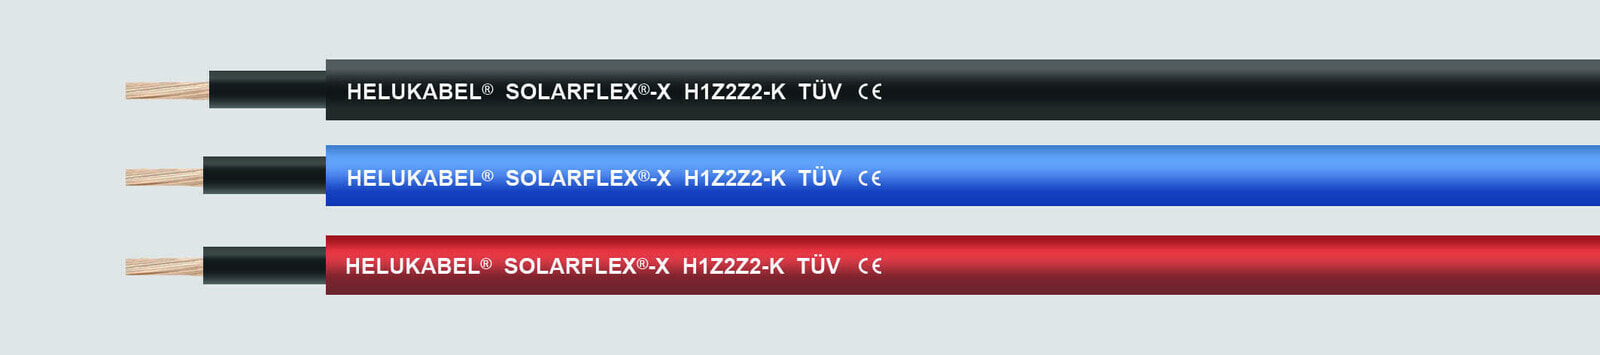 Helukabel SOLARFLEX-X H1Z2Z2-K - Medium voltage cable - Blue - 1 x 4 mm² - 38.4 kg/km - -40 - 90 °C - DIN VDE 0285-525-1/DIN EN 50525.1 appendix B,DIN EN 60754-1/IEC 60754-1